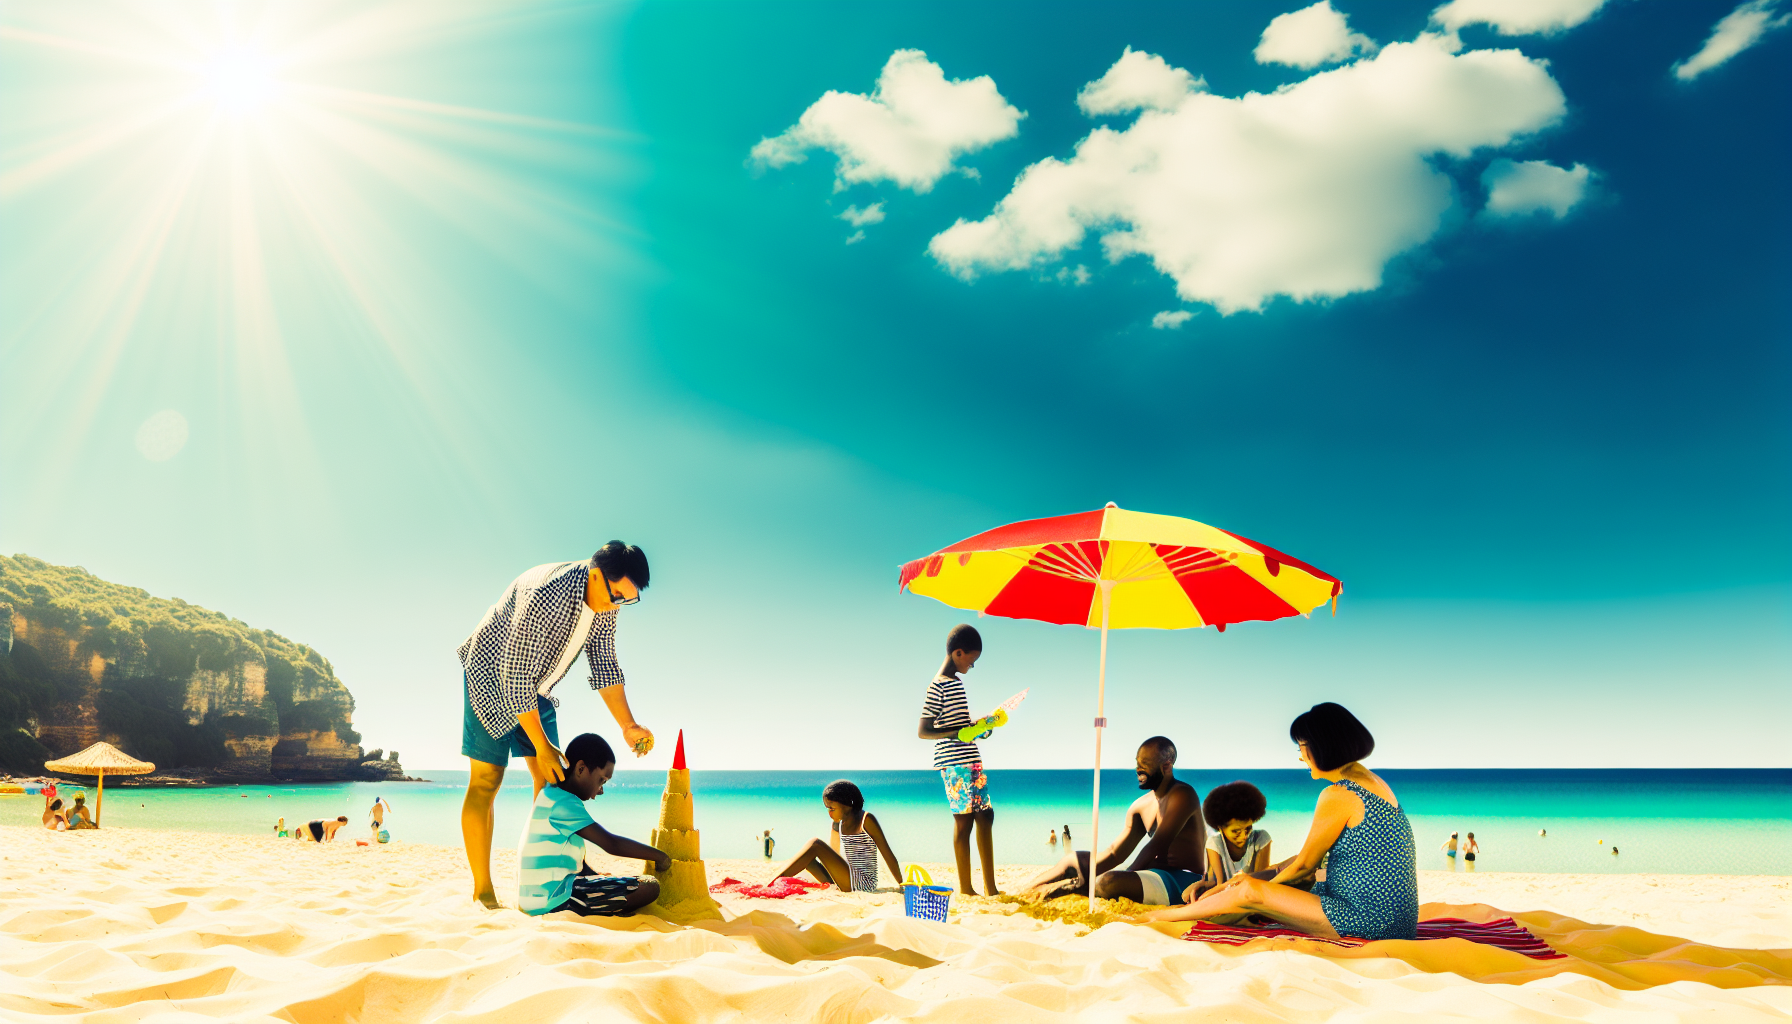 Beach Umbrellas and Family Fun